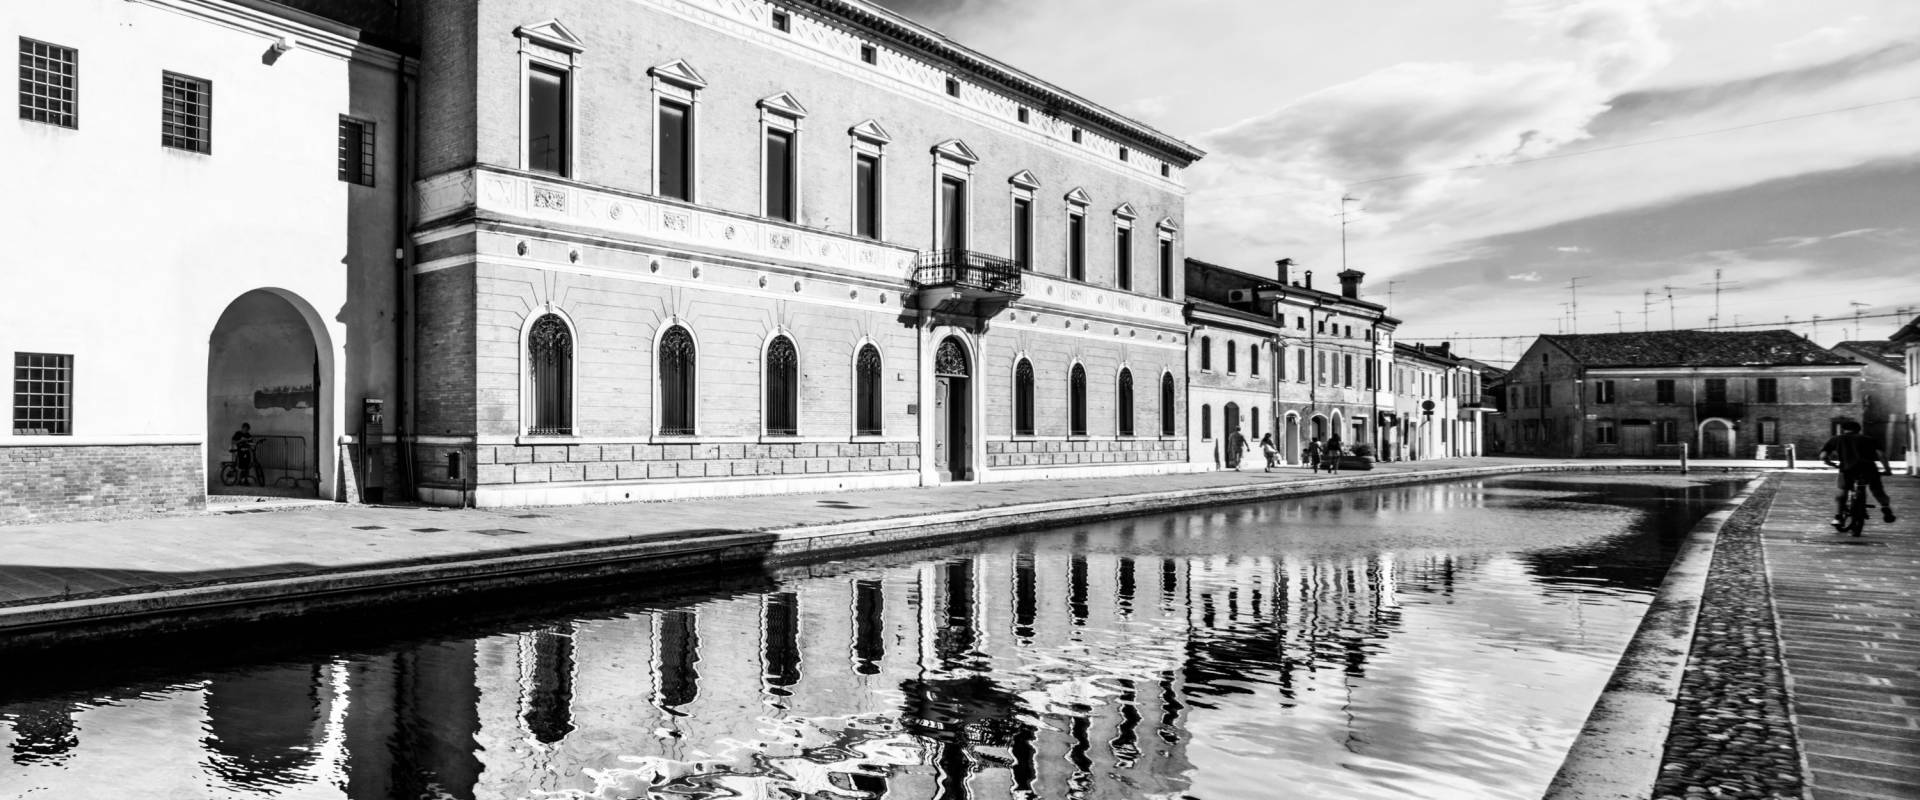 Palazzo Bellini photo by Vanni Lazzari